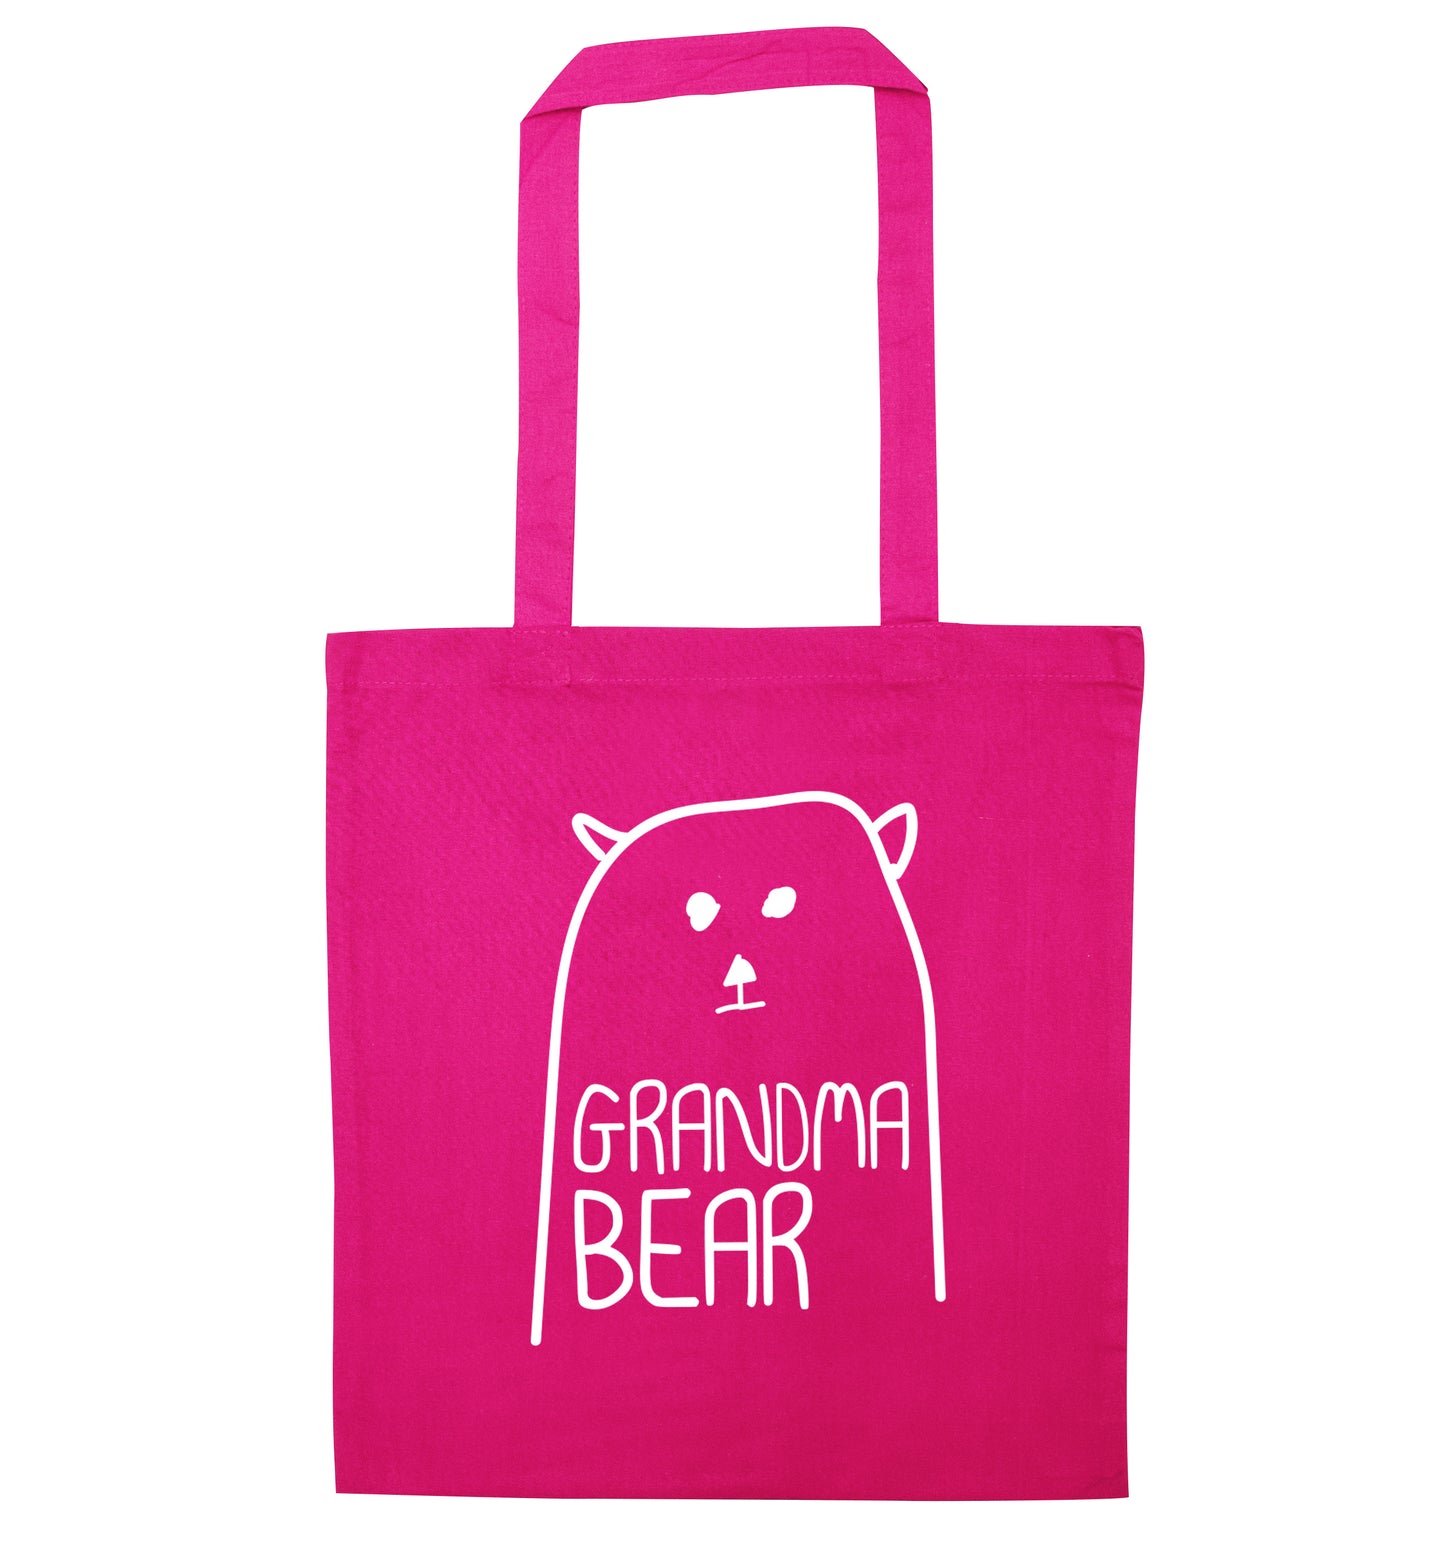 Grandma bear pink tote bag